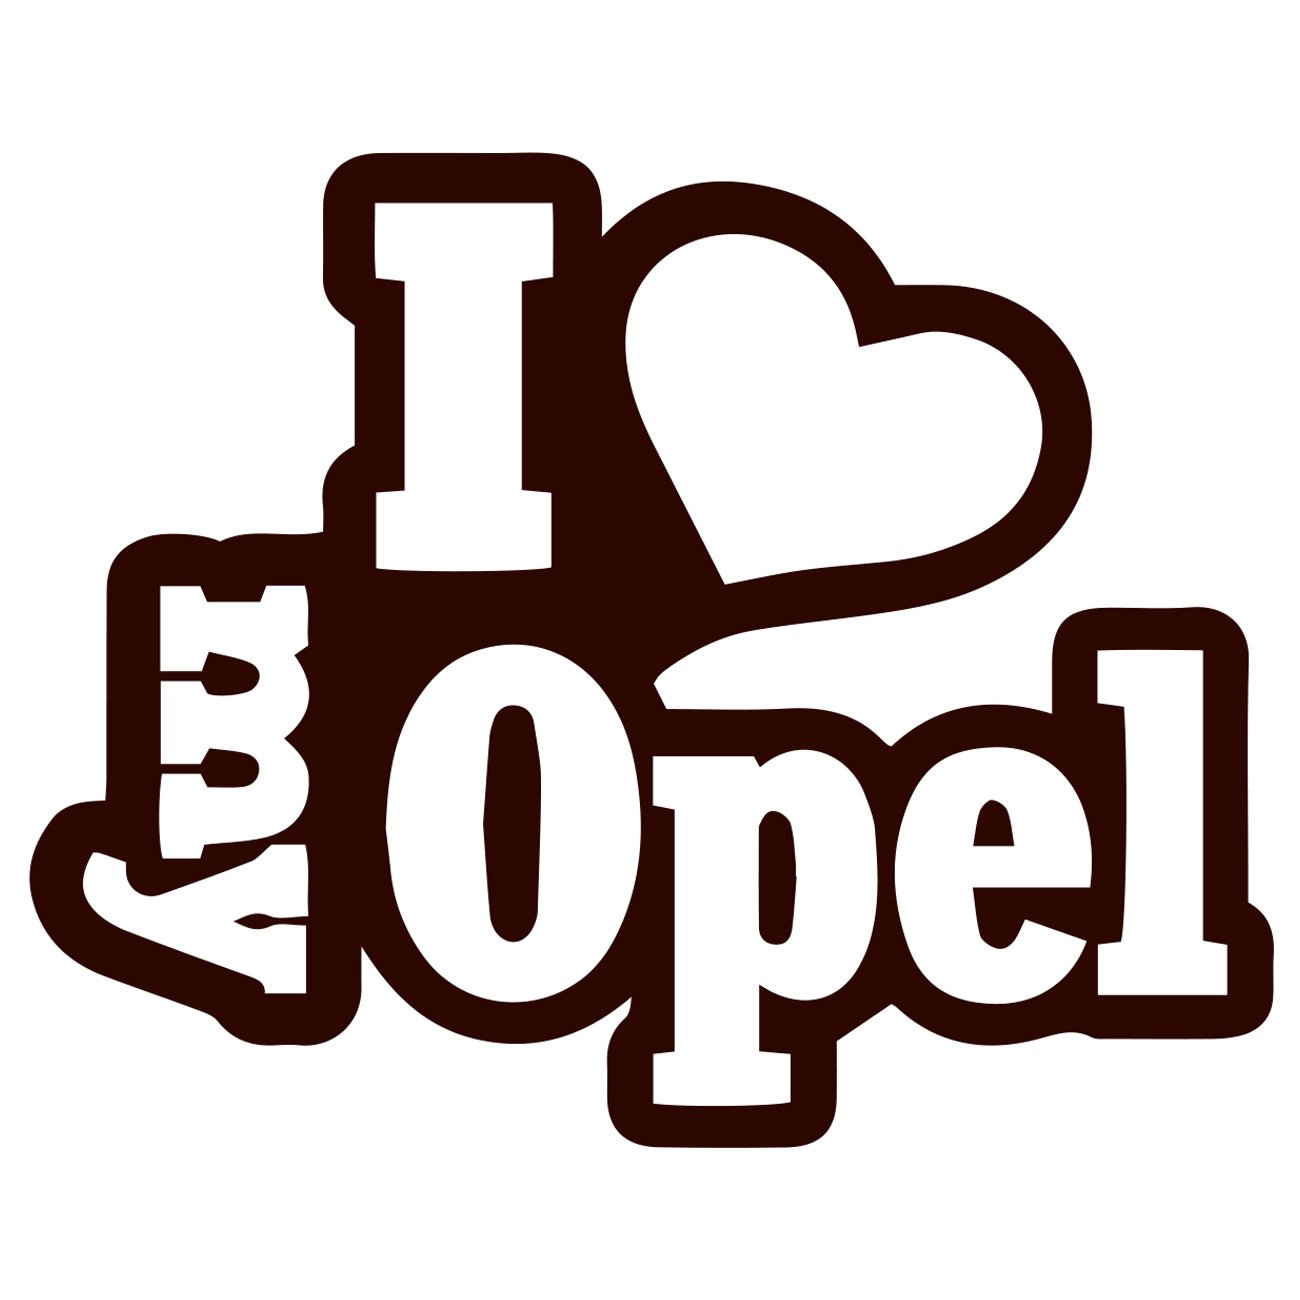 I love my Opel